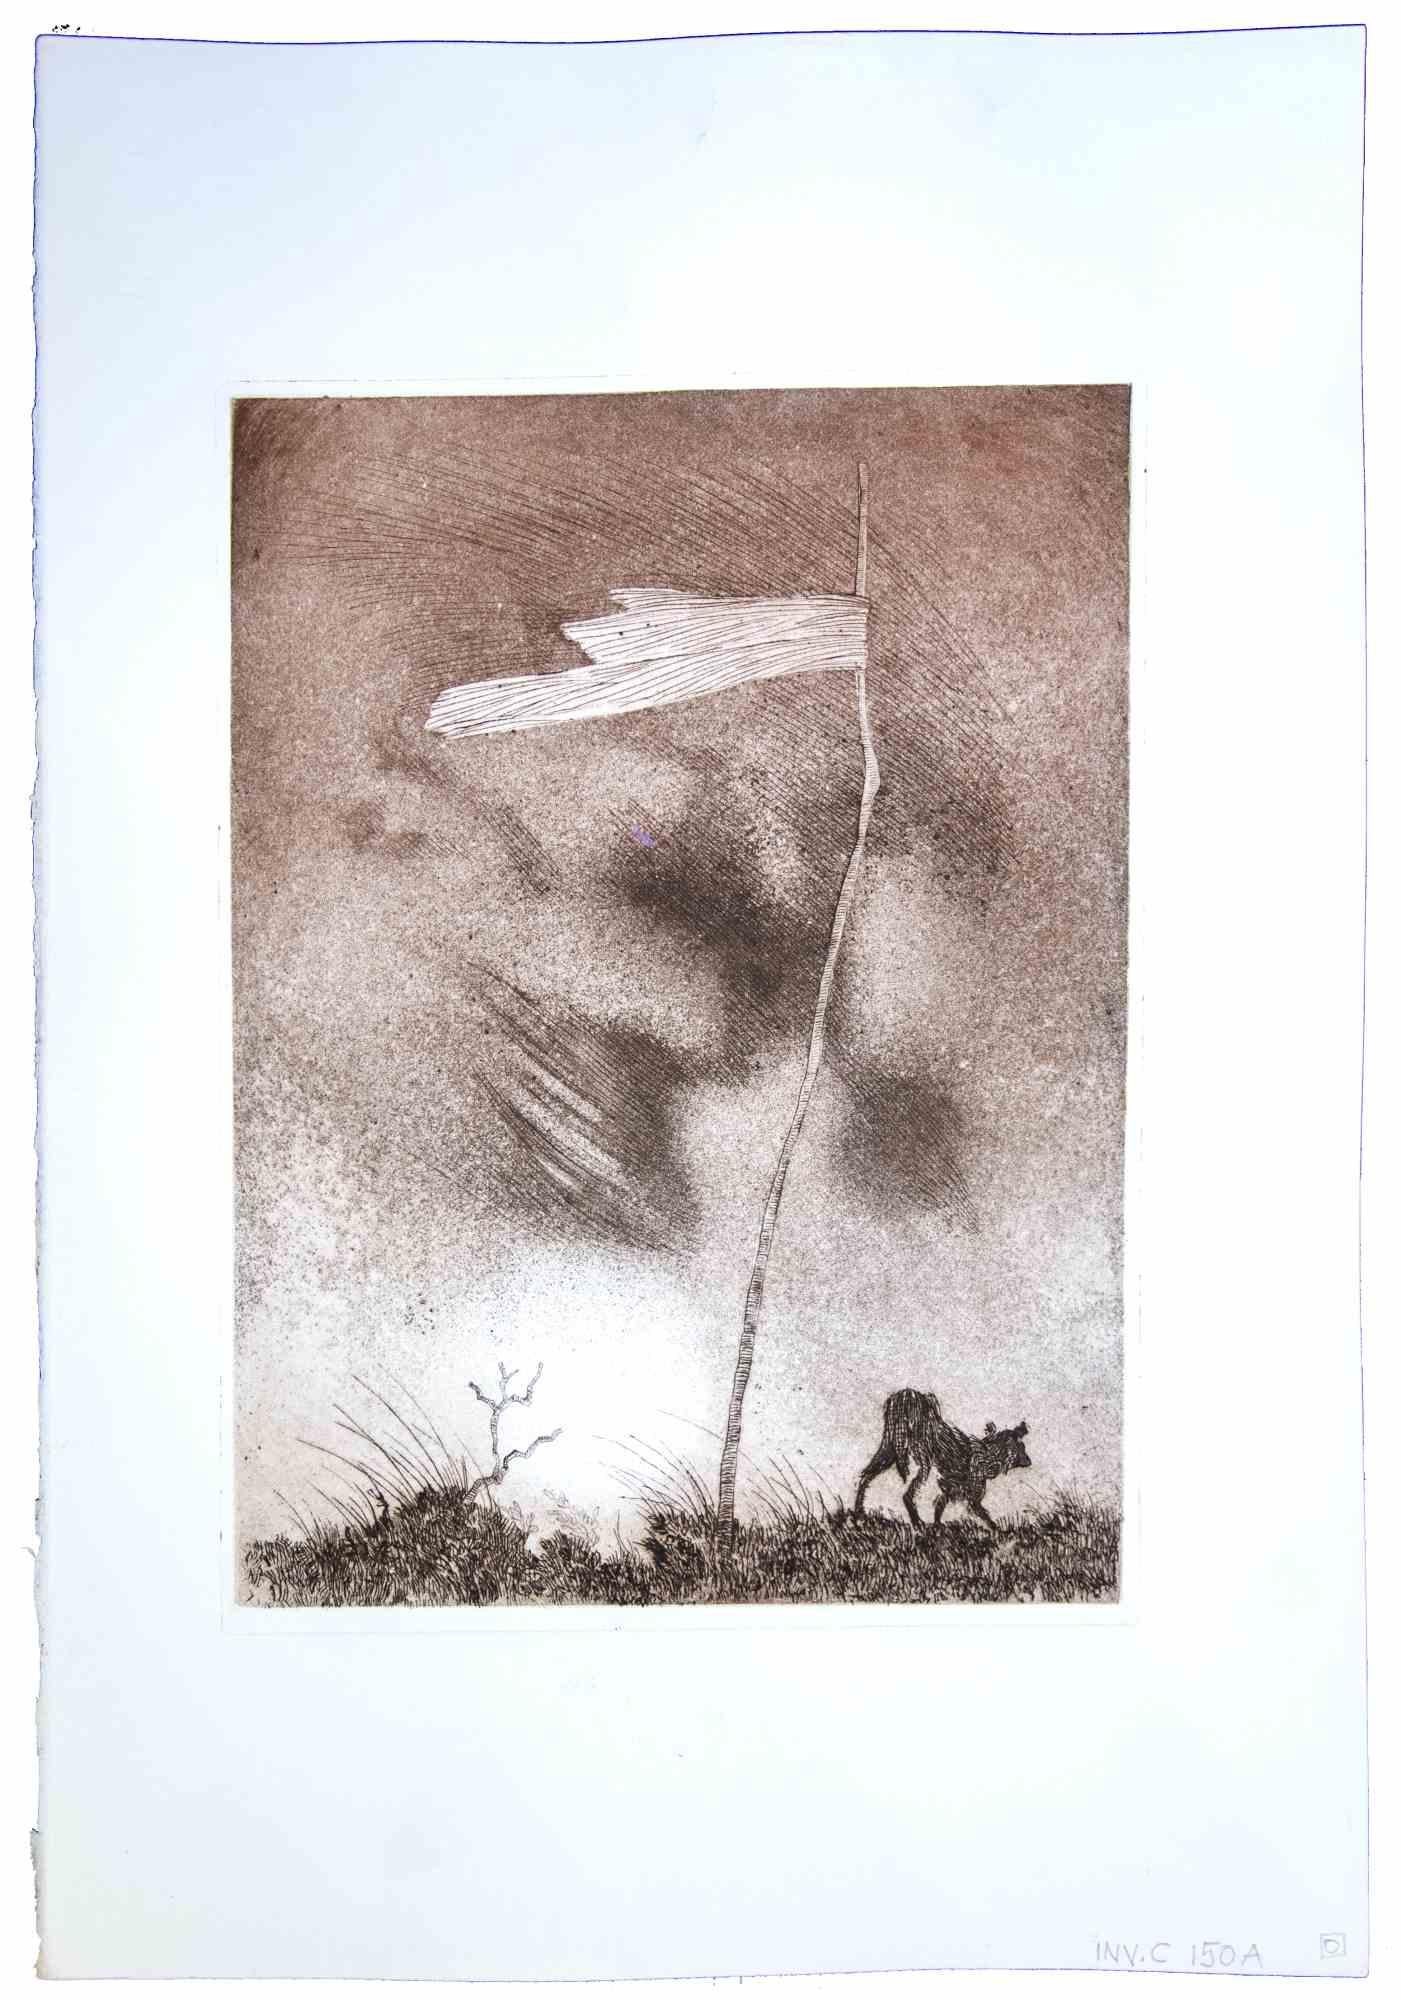 Lonley Flag est une gravure et aquatinte originale réalisée par Leo Guida dans les années 1970.

Bon état, pas de signature.

Monté sur un passe-partout en carton blanc (50x34 cm).

Leo Guida  (1992 - 2017). Sensible aux questions d'actualité, aux